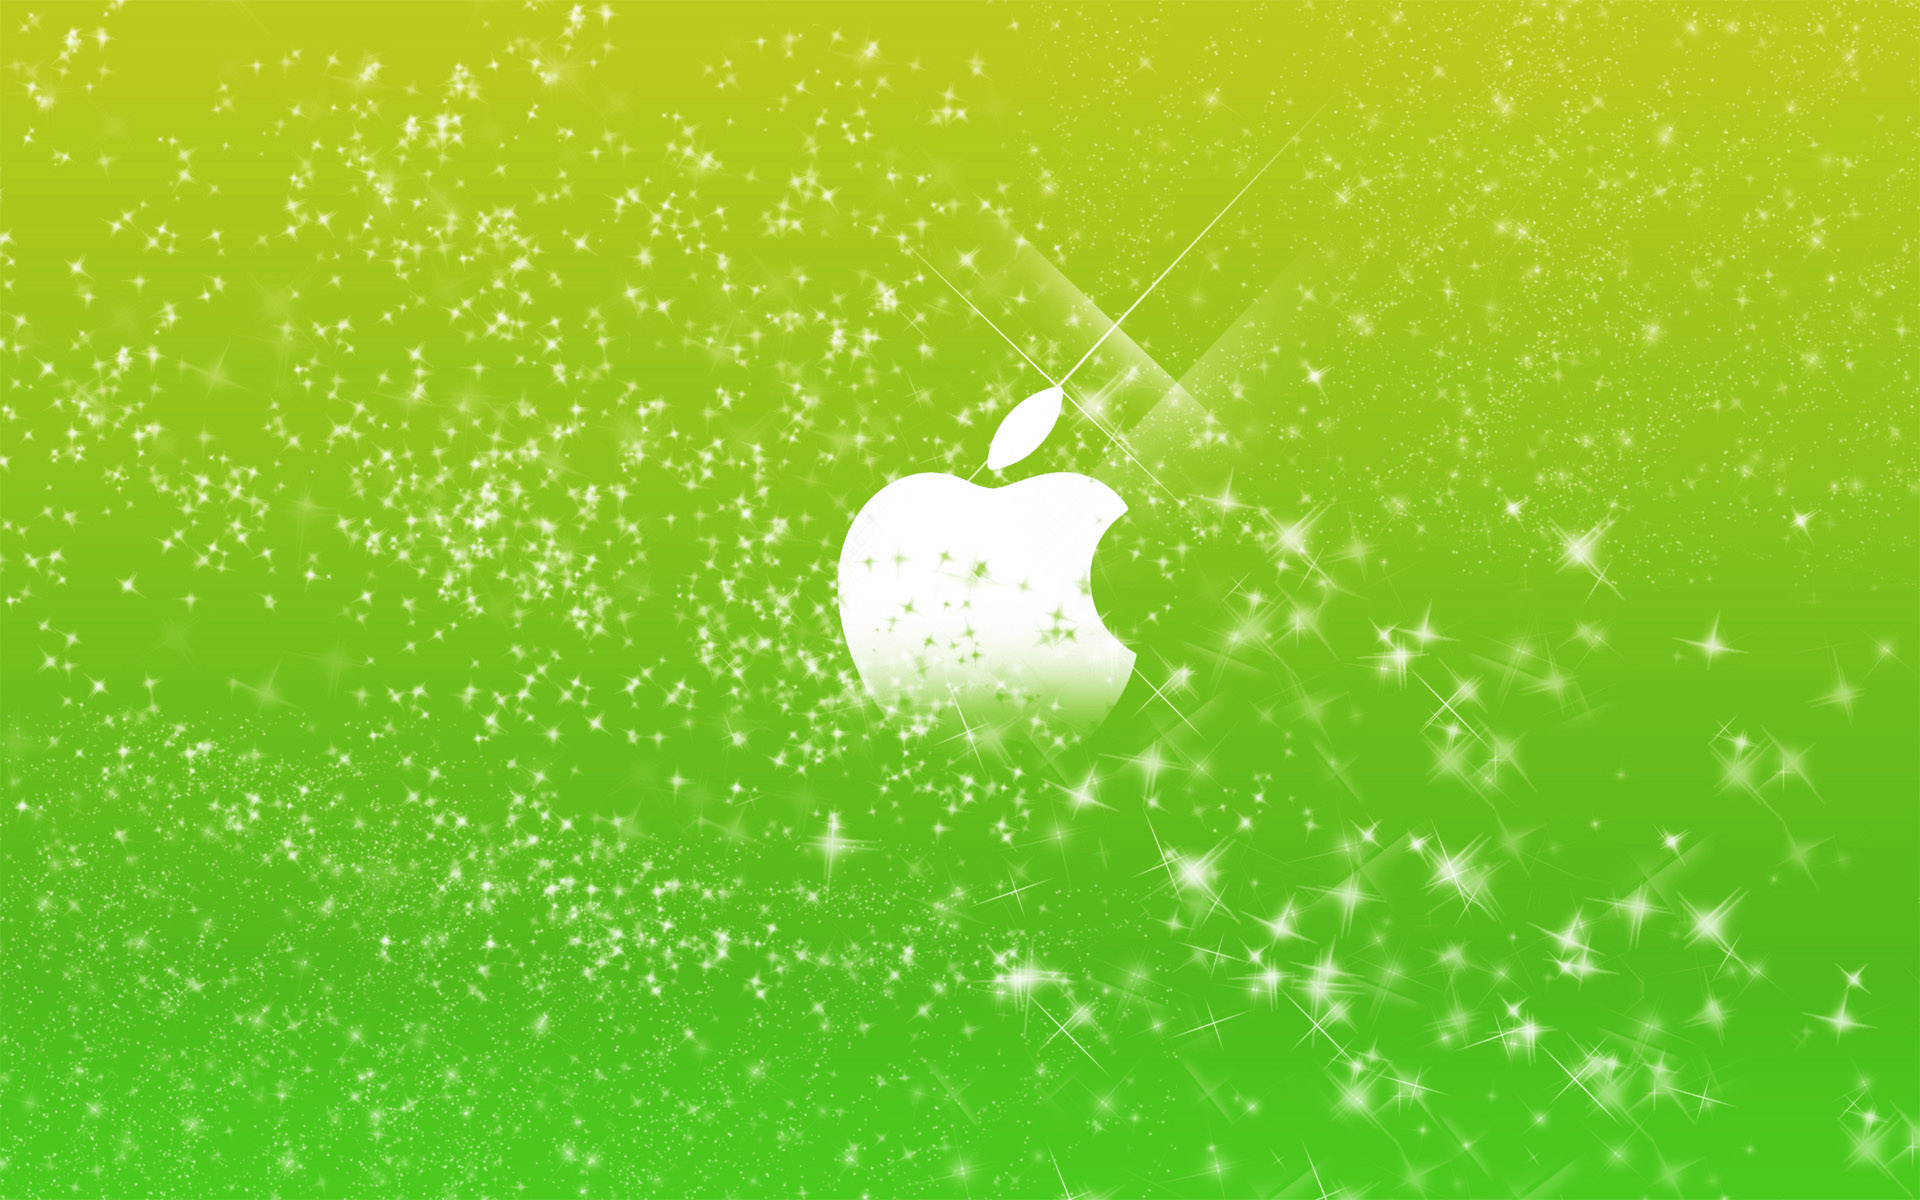 Nếu bạn yêu thích hiệu ứng lấp lánh, thì hình ảnh Green Glitters Apple này chắc chắn sẽ thu hút bạn. Không chỉ có mặt lấp lánh rực rỡ, táo xanh tươi còn là điểm nhấn hoàn hảo mang lại sự tươi mới và sáng tạo cho màn hình của bạn.